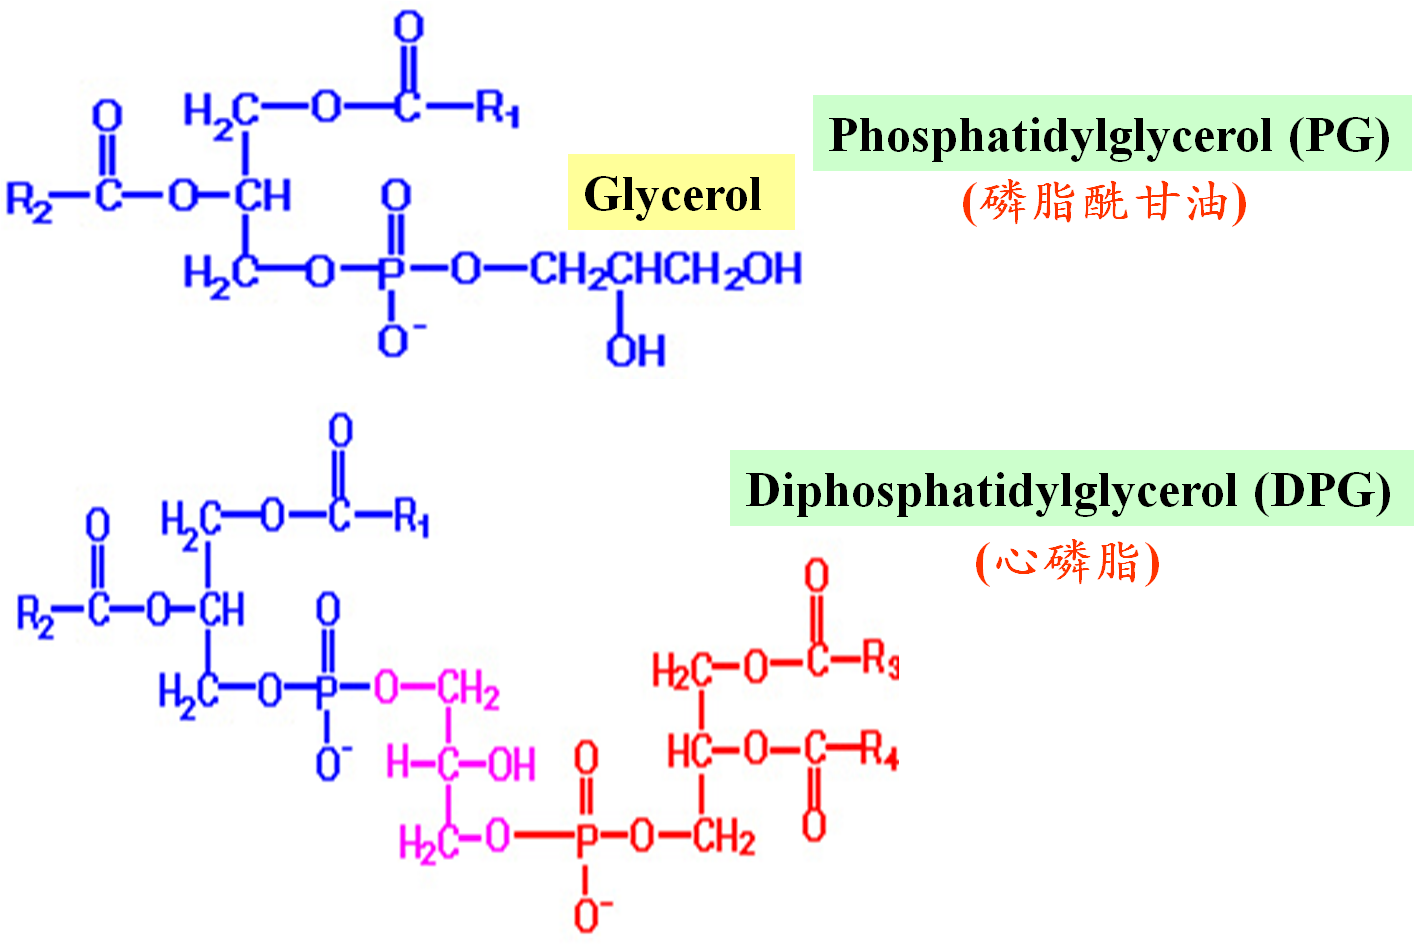 二棕榈酸磷脂酰胆碱